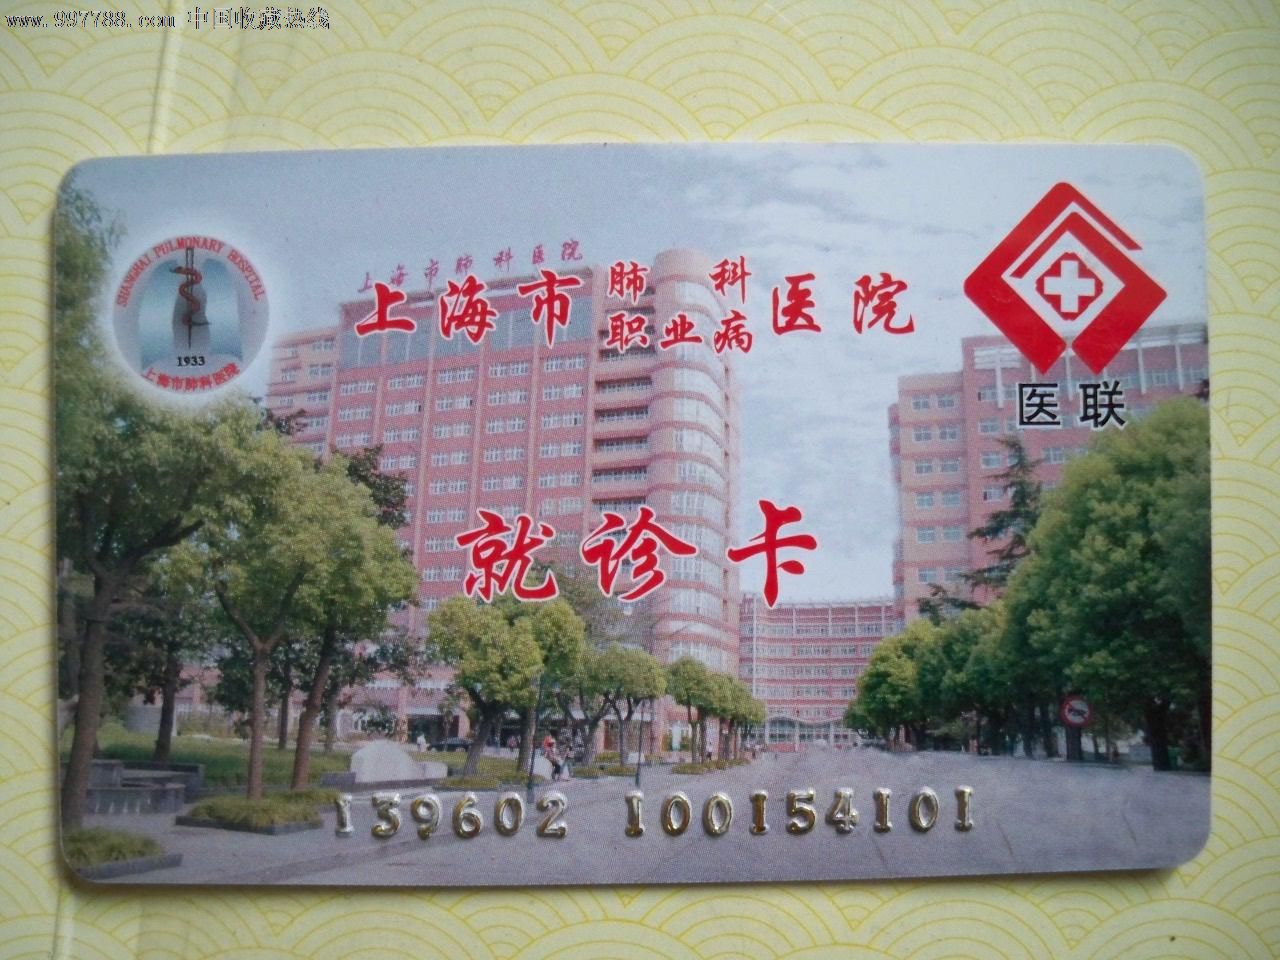 上海市肺科&职业病医院就诊卡-价格:1元-se1